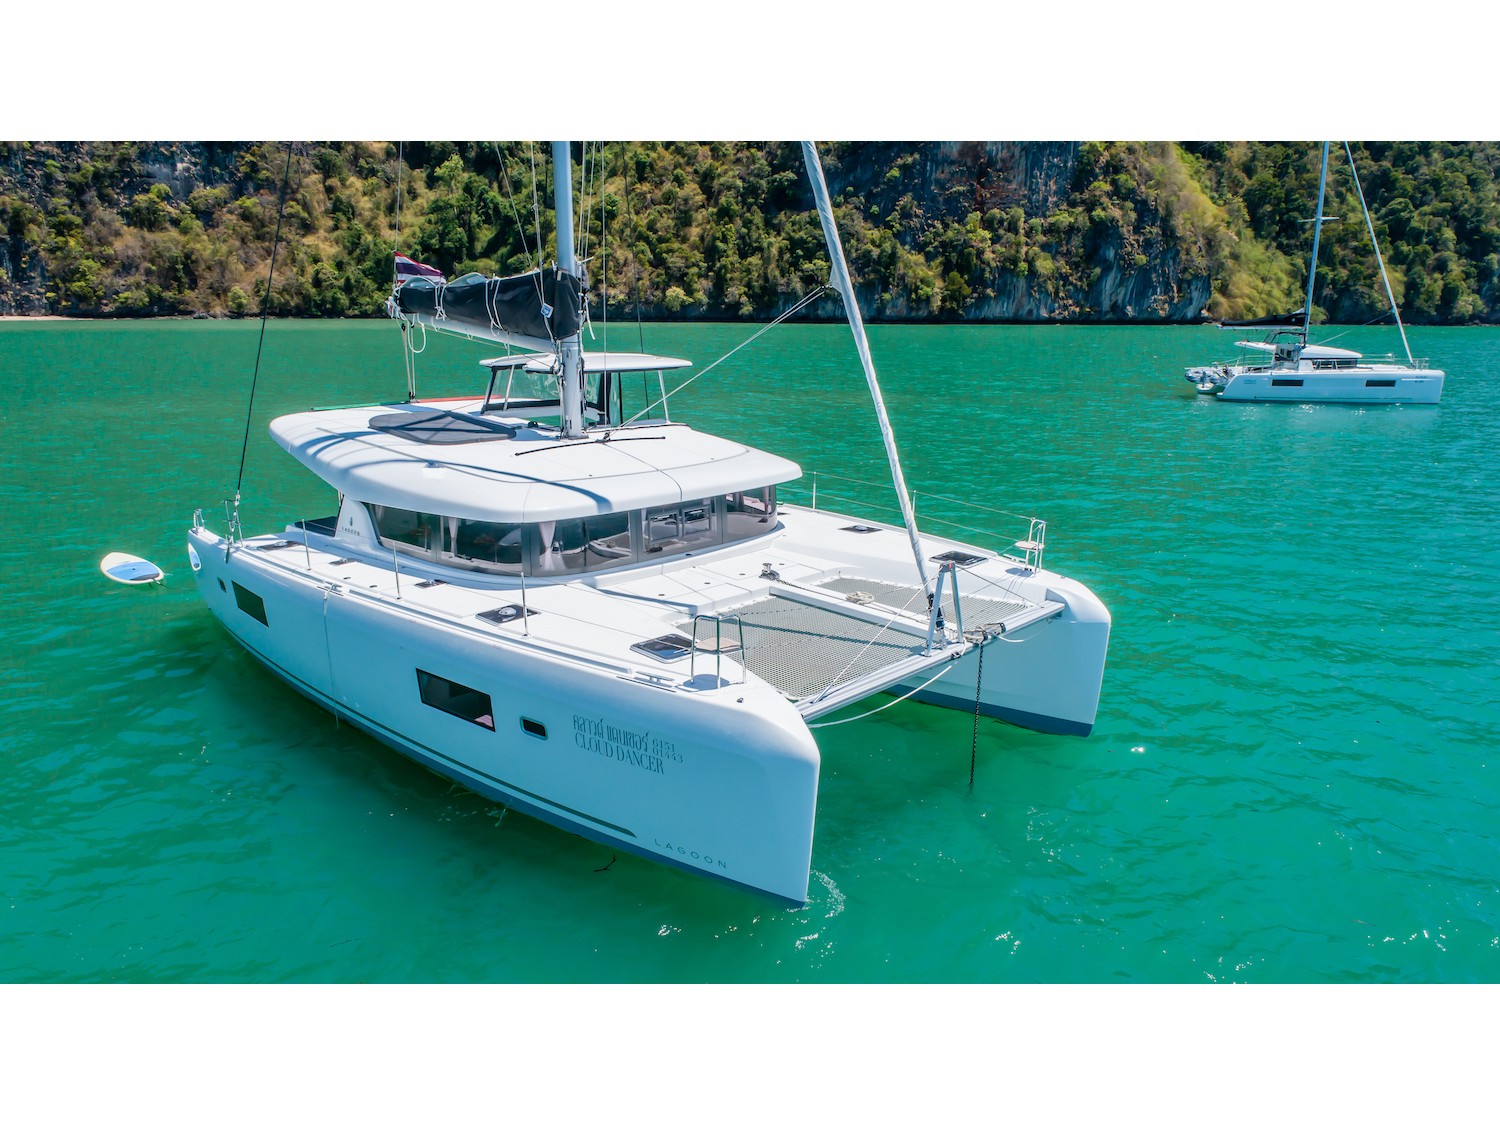 Lagoon 42 - Catamaran Charter Thailand & Boat hire in Thailand Phuket Ao Po Grand Marina 2